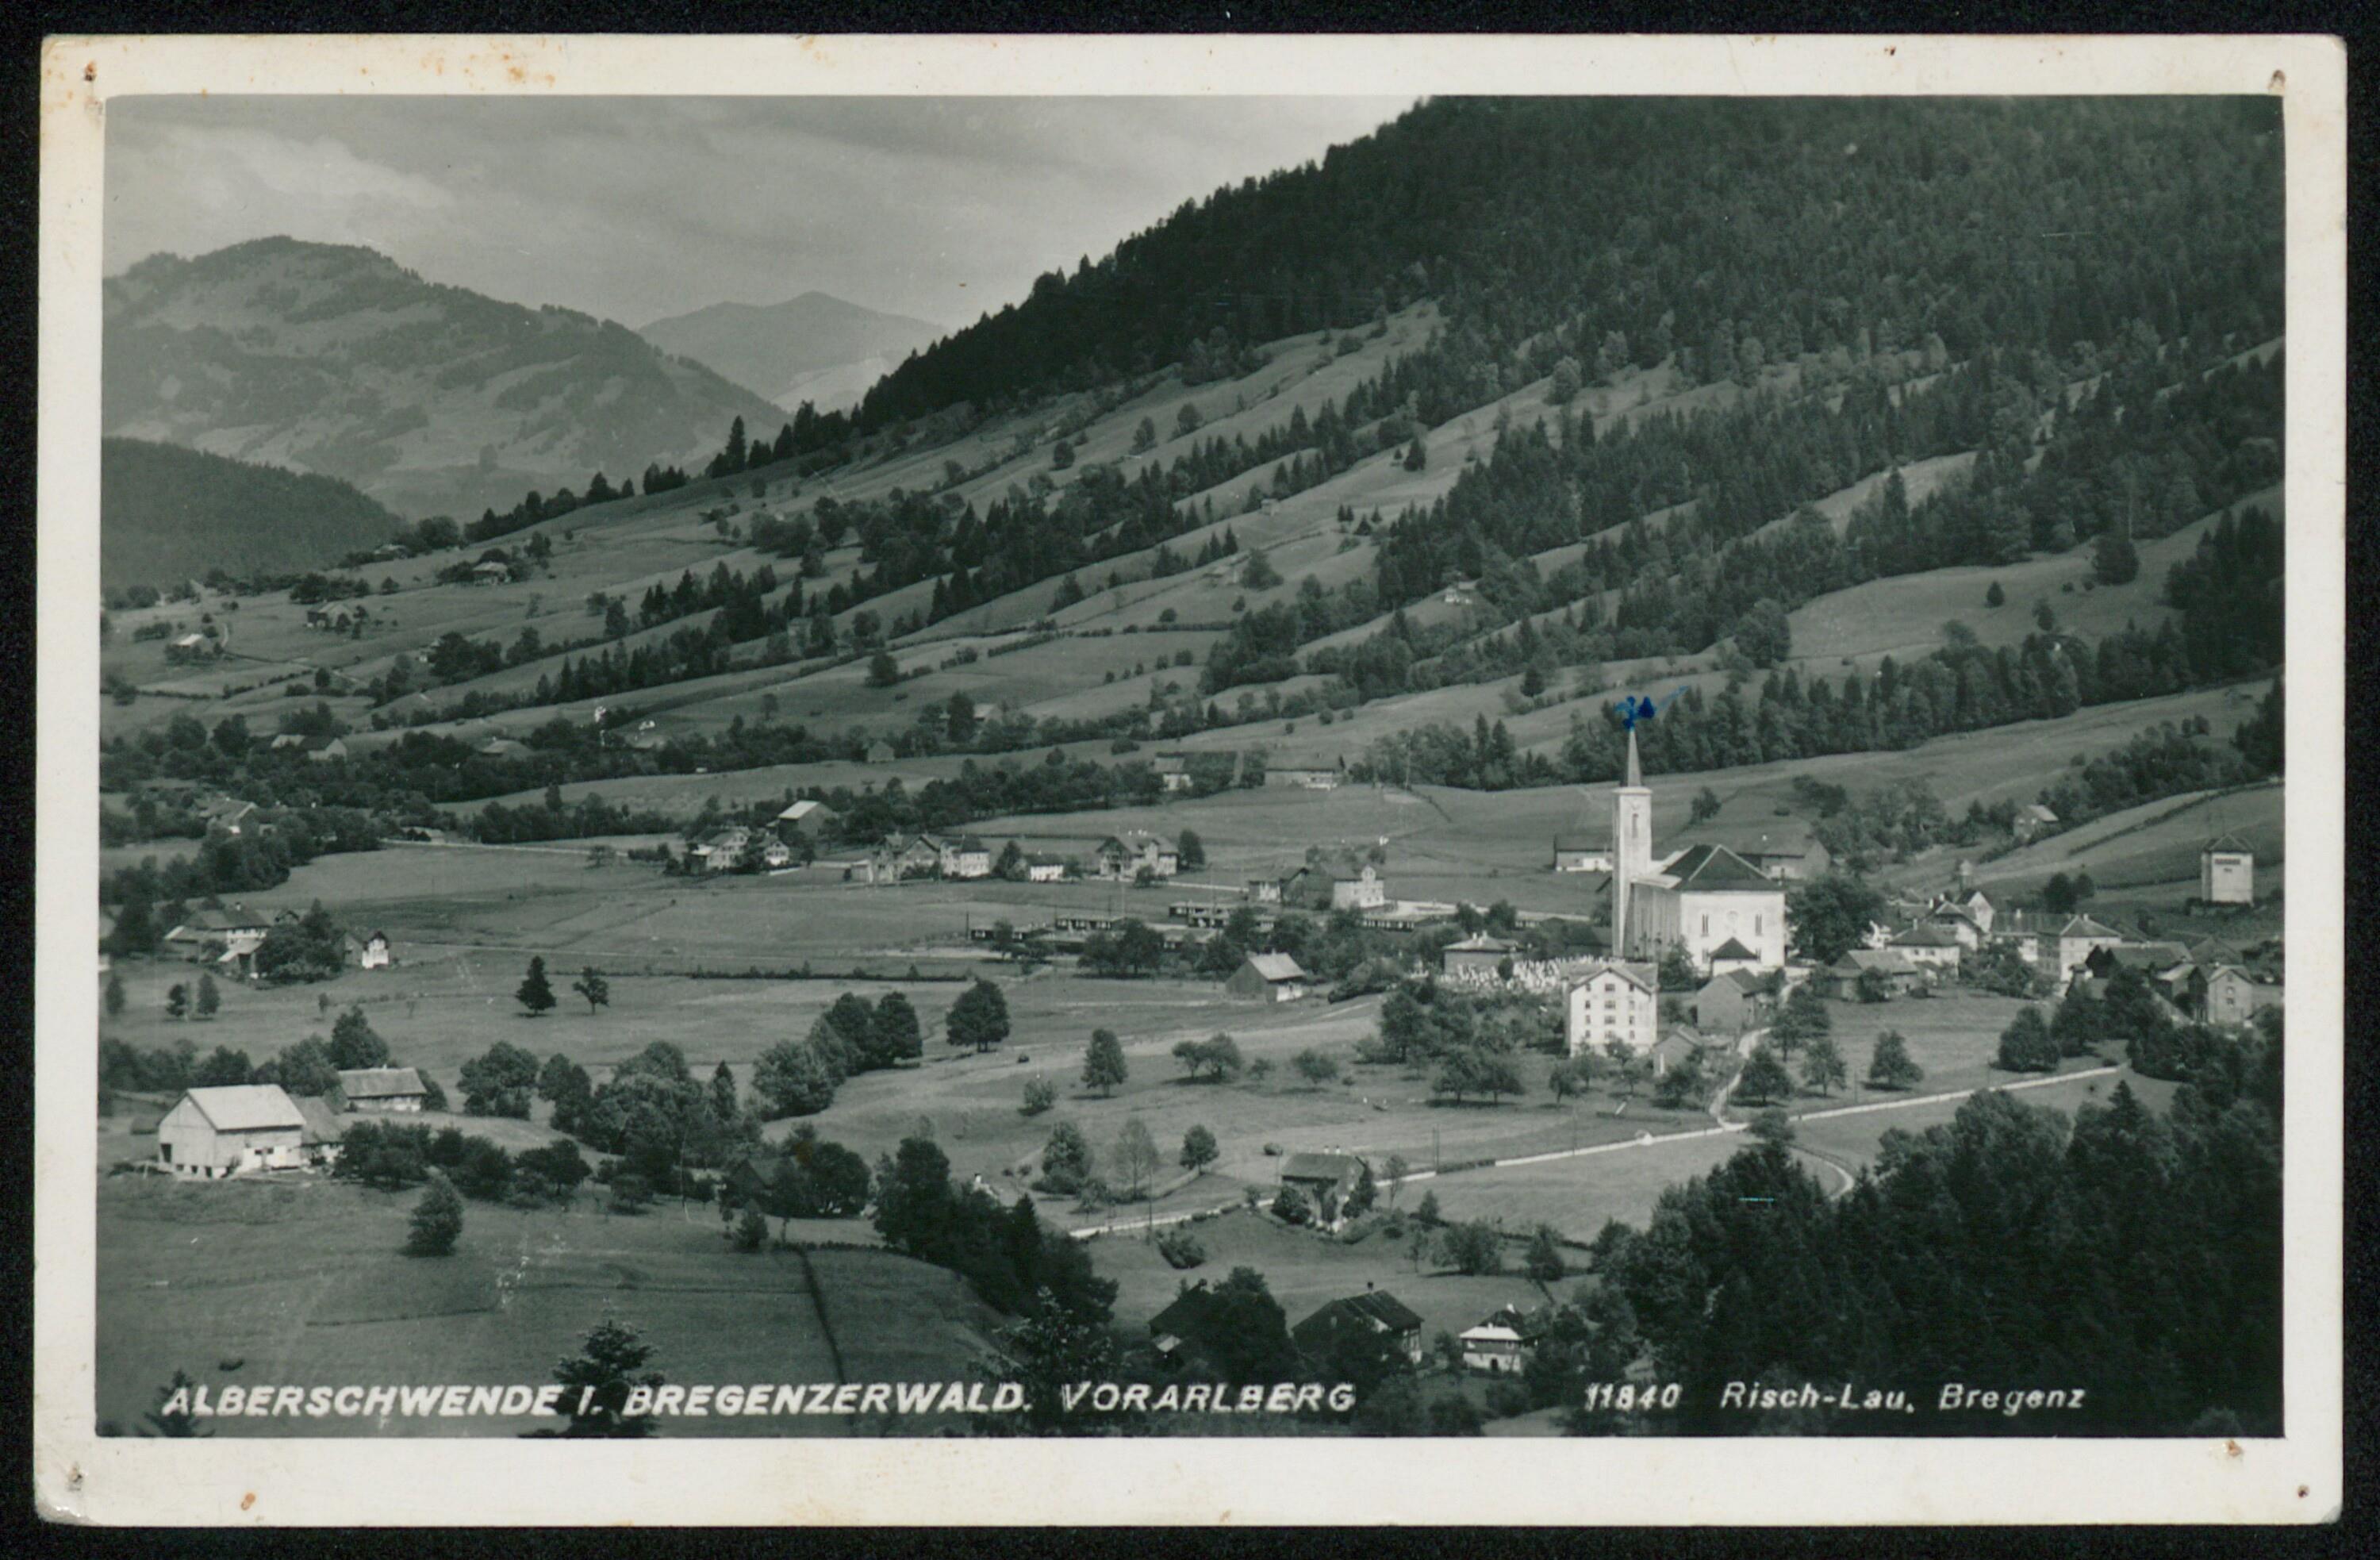 Alberschwende i. Bregenzerwald, Vorarlberg></div>


    <hr>
    <div class=